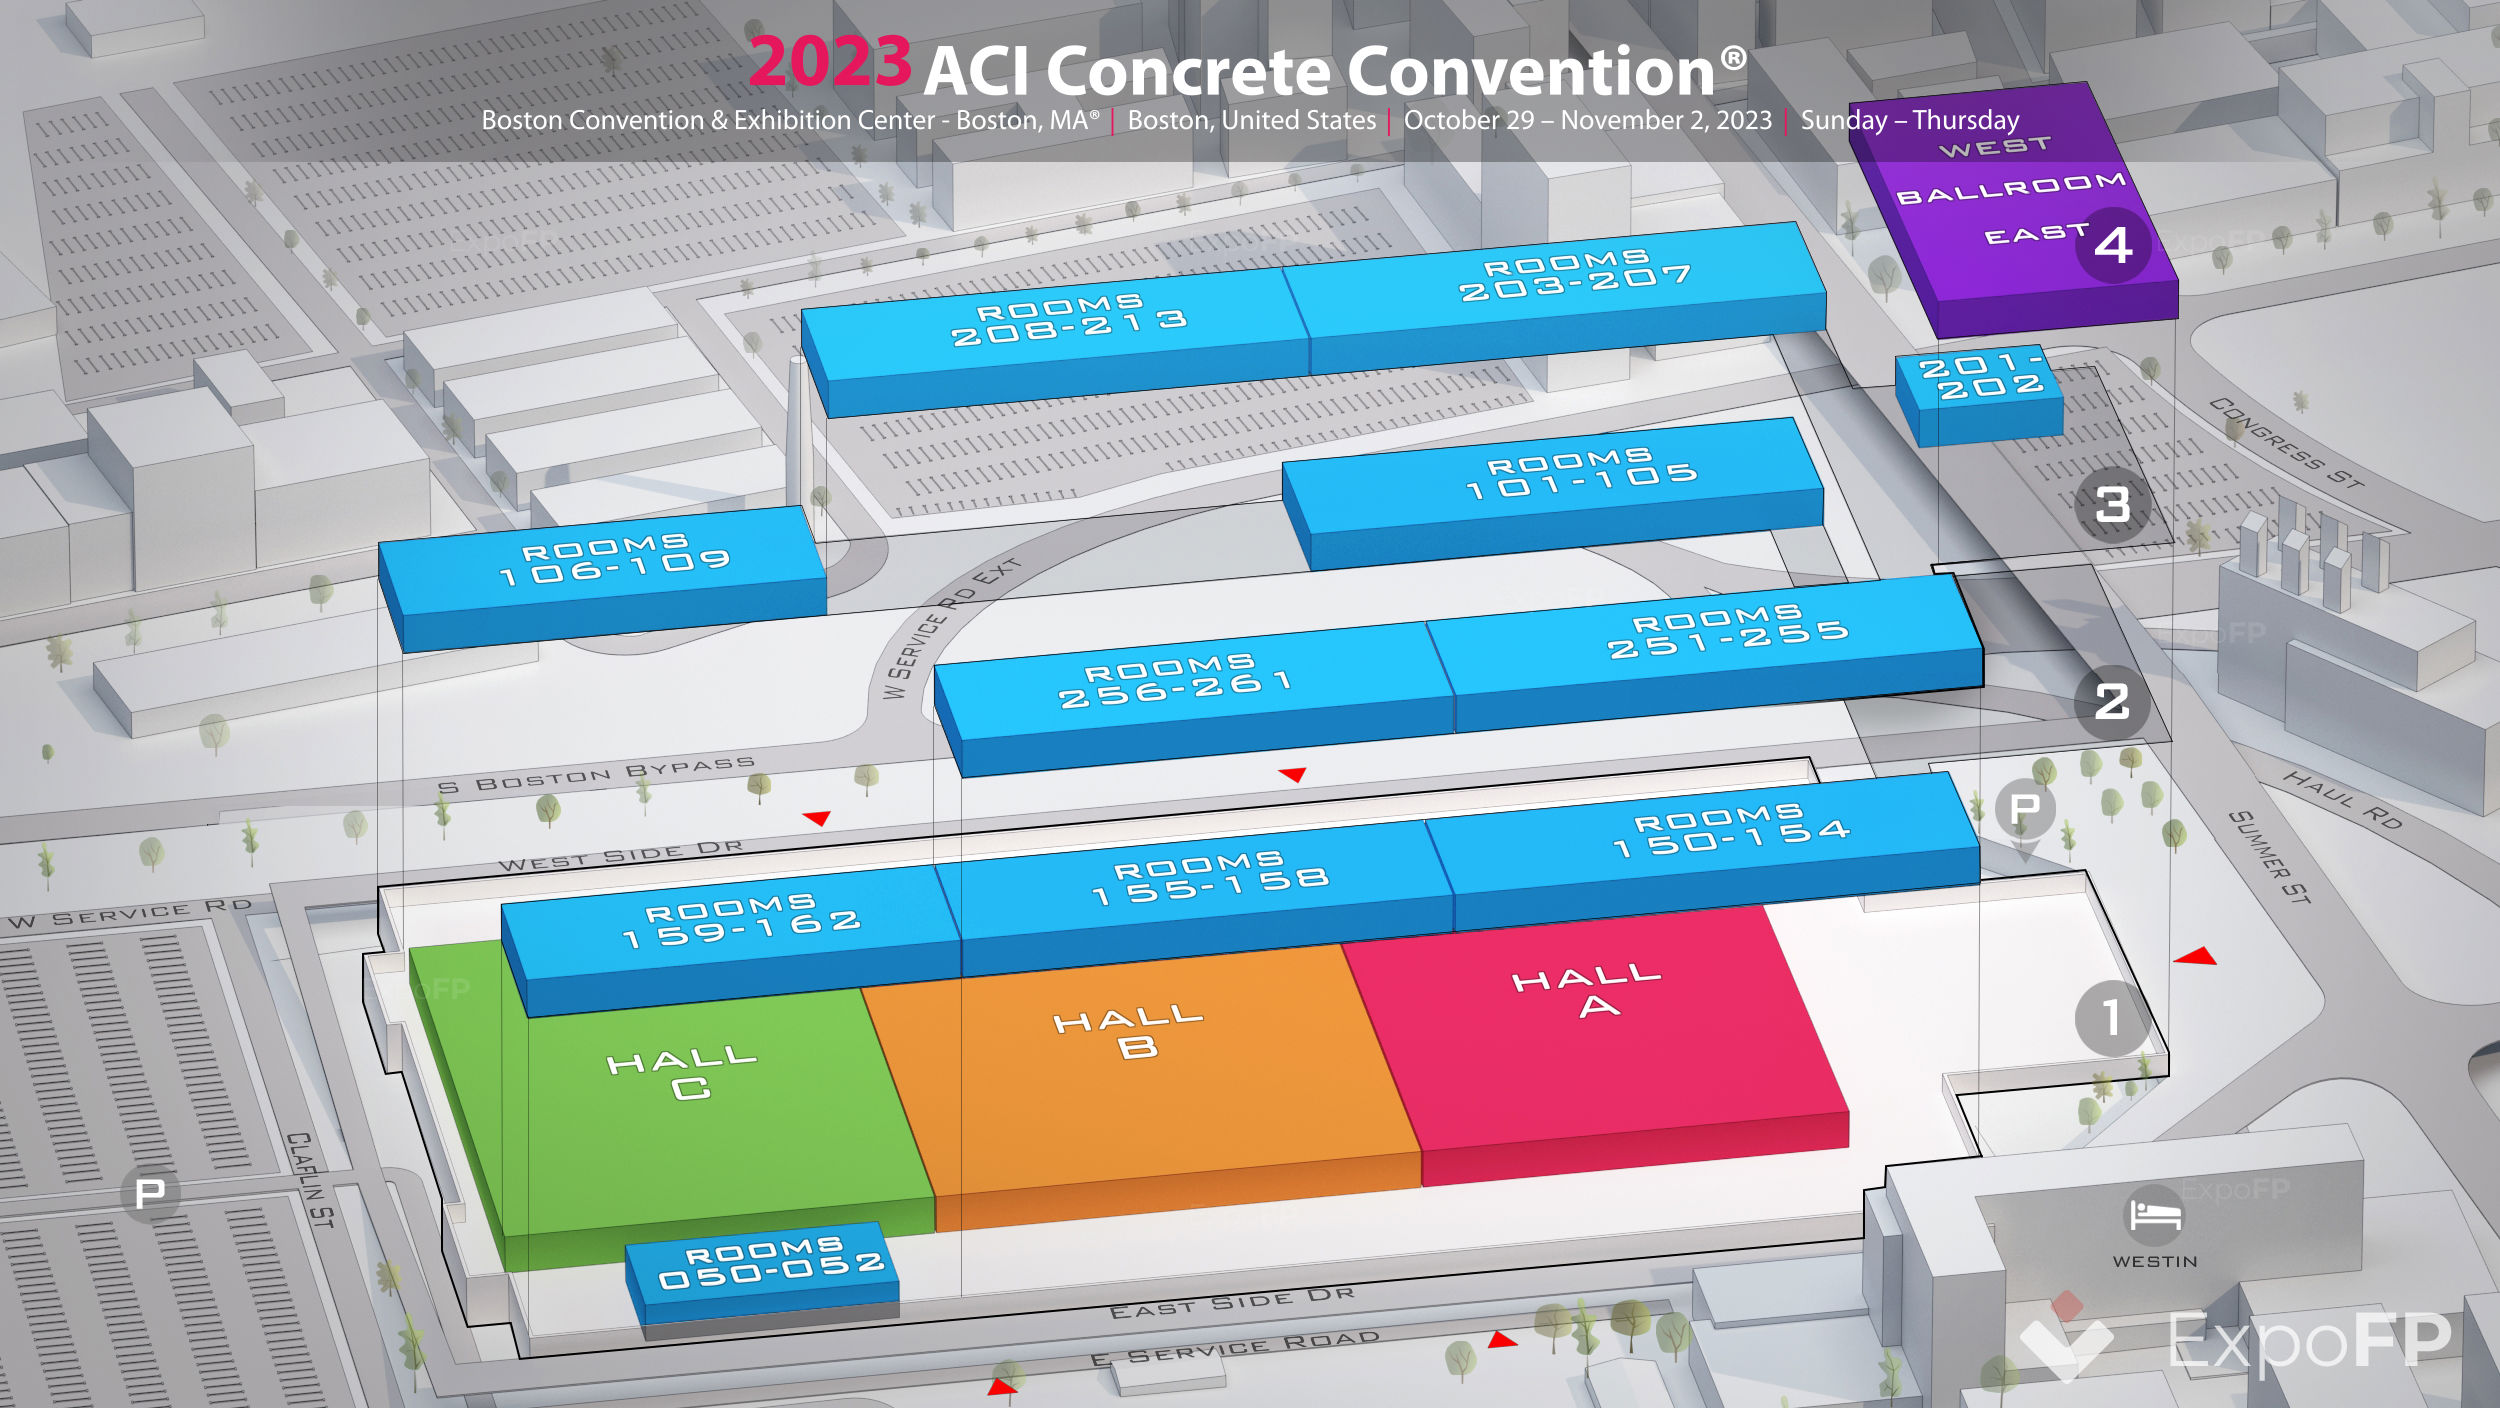 ACI Concrete Convention 2023 in Boston Convention & Exhibition Center